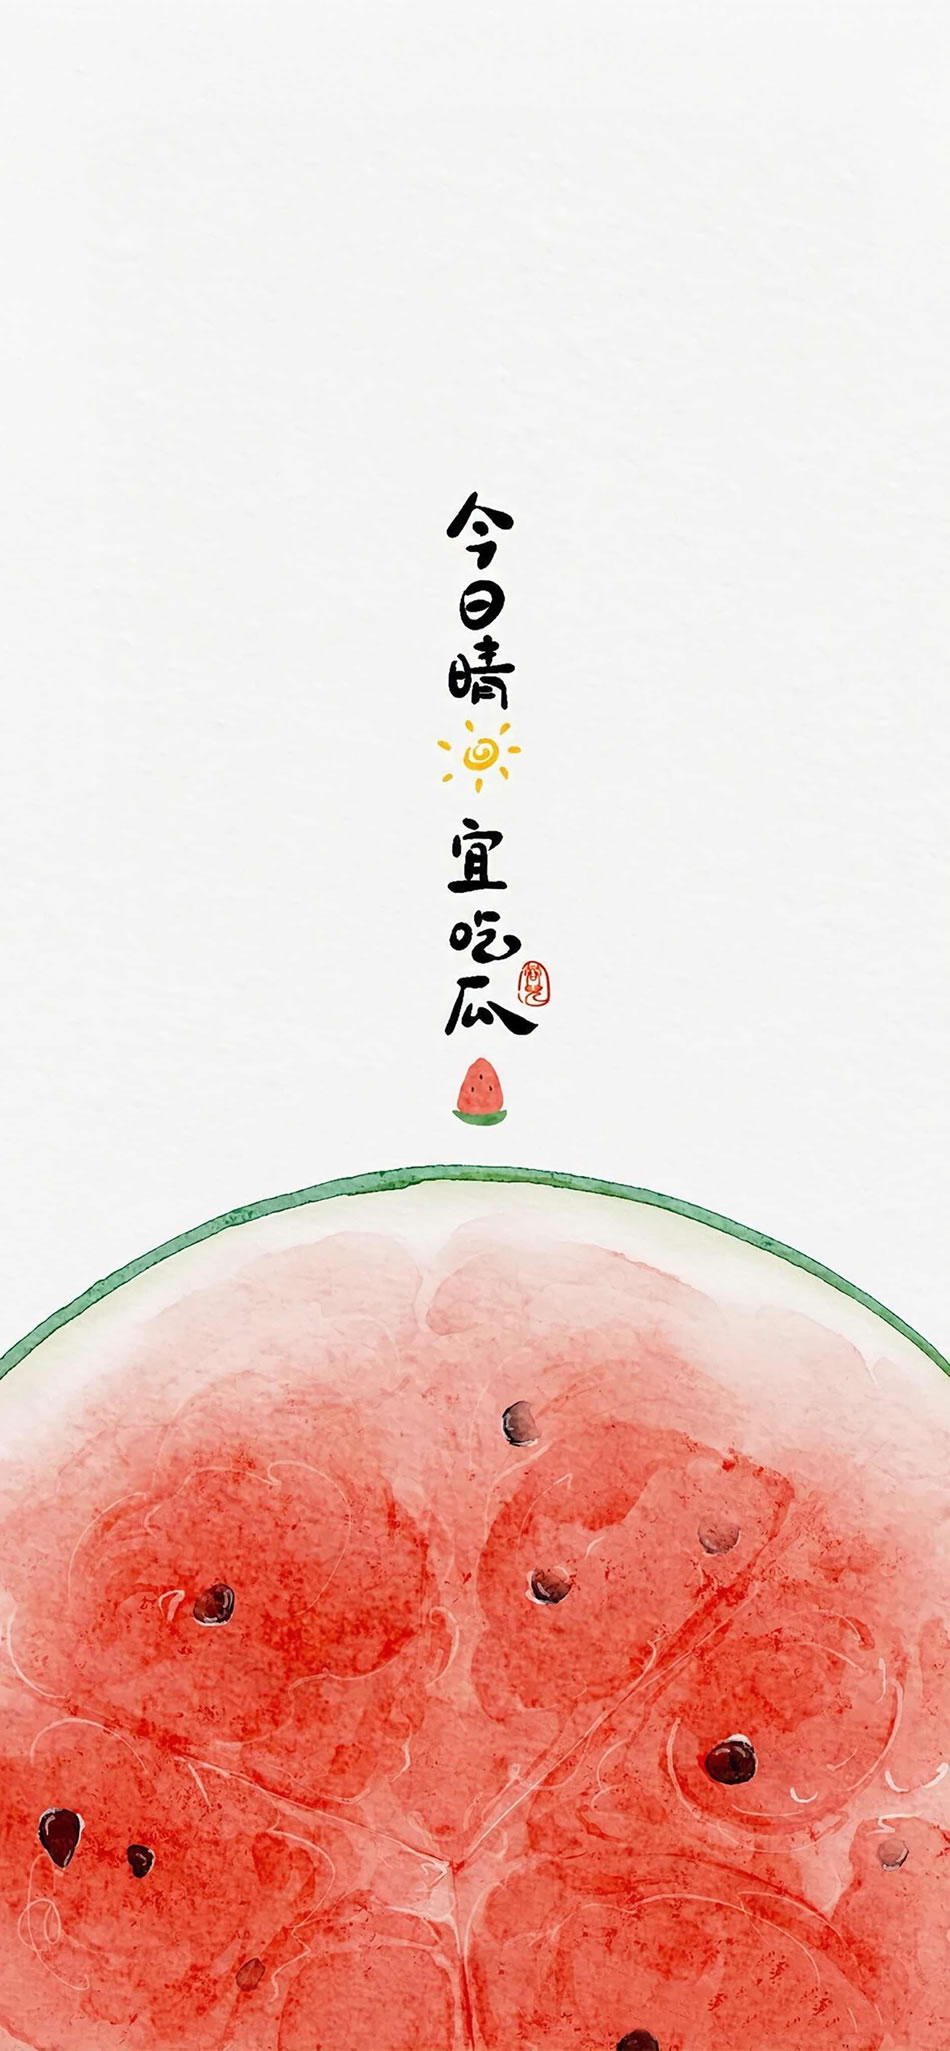 今日晴 宜吃瓜 吃瓜专用手机壁纸